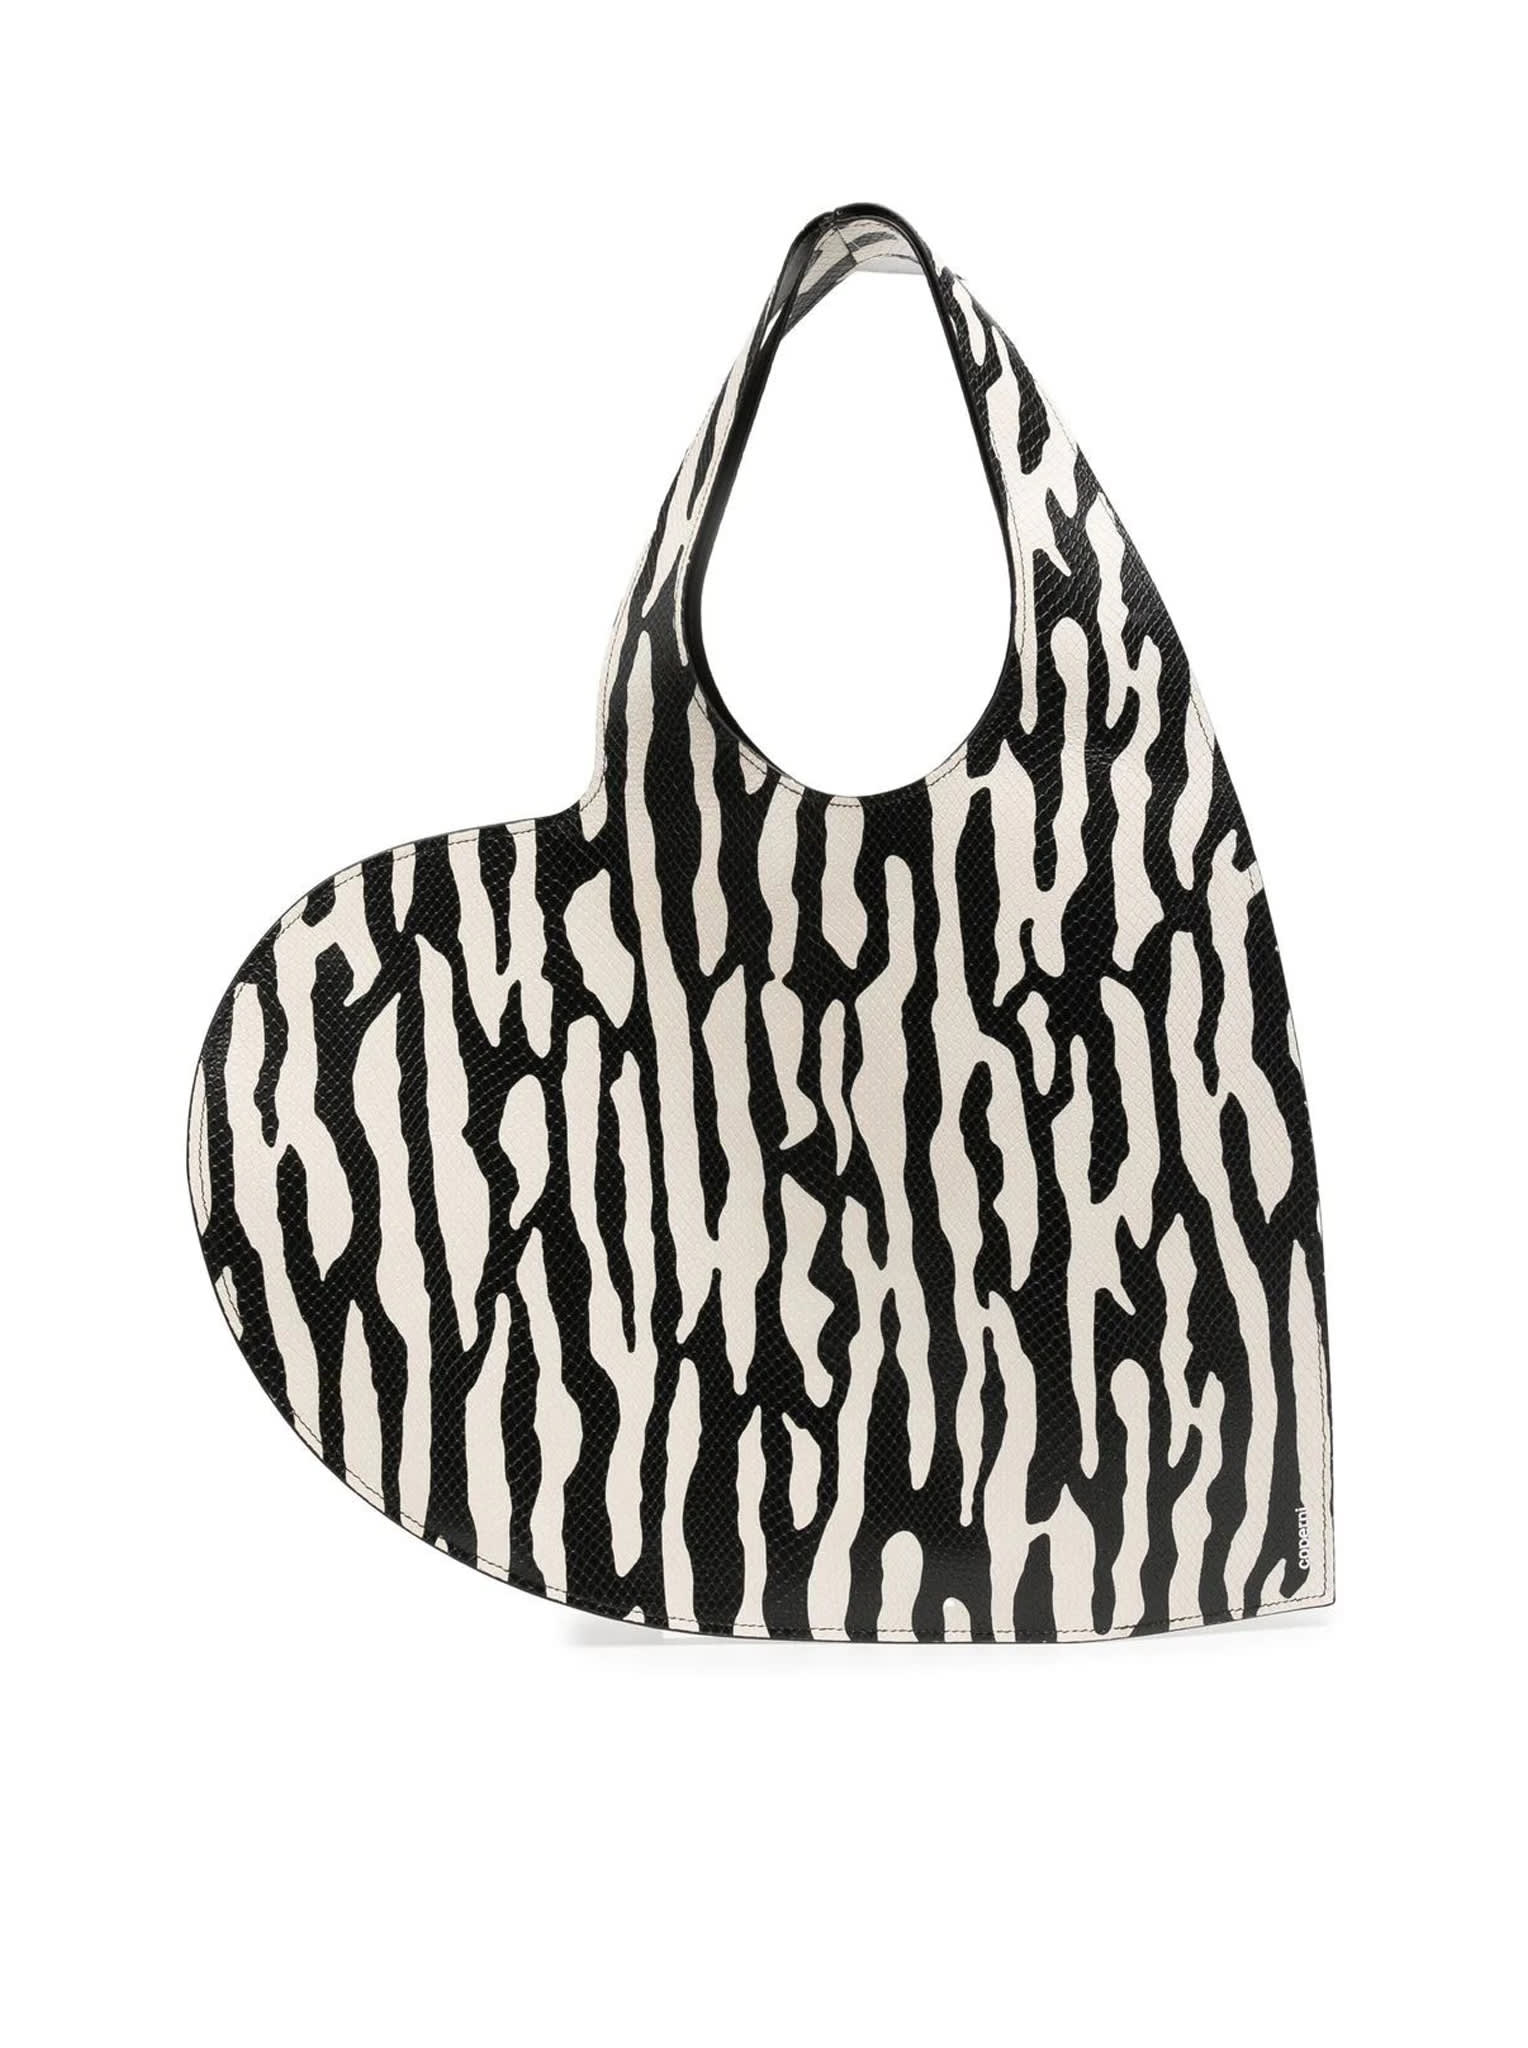 Coperni Zebra Print Heart Tote Bag